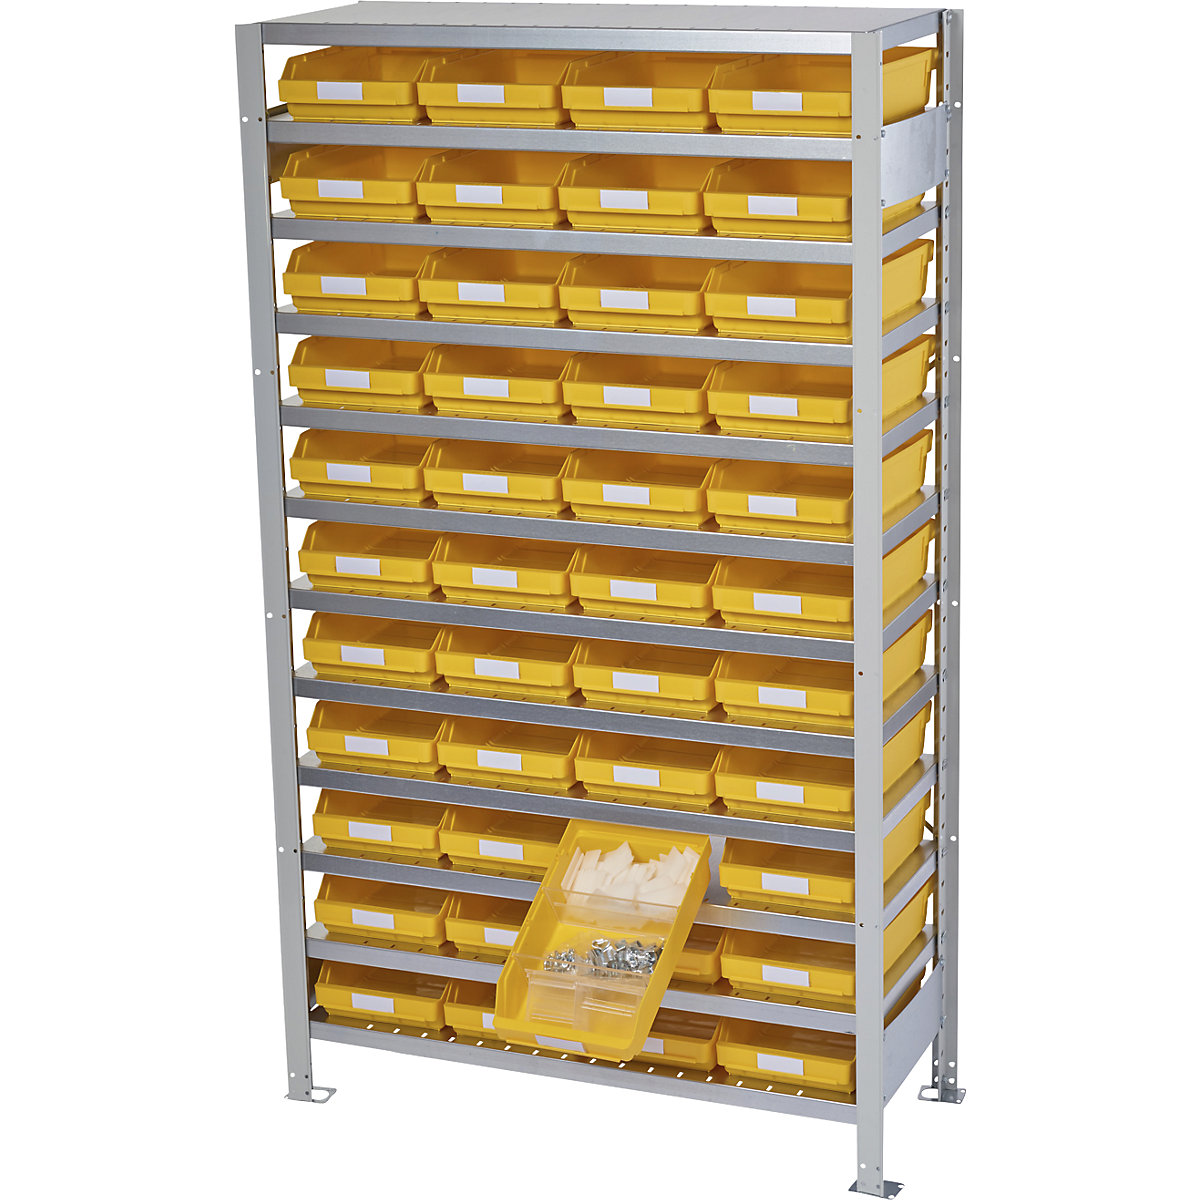 Estante de encaixar com caixas para estante – STEMO, altura da estante 1790 mm, estante básica, profundidade 300 mm, 44 caixas amarelas-25